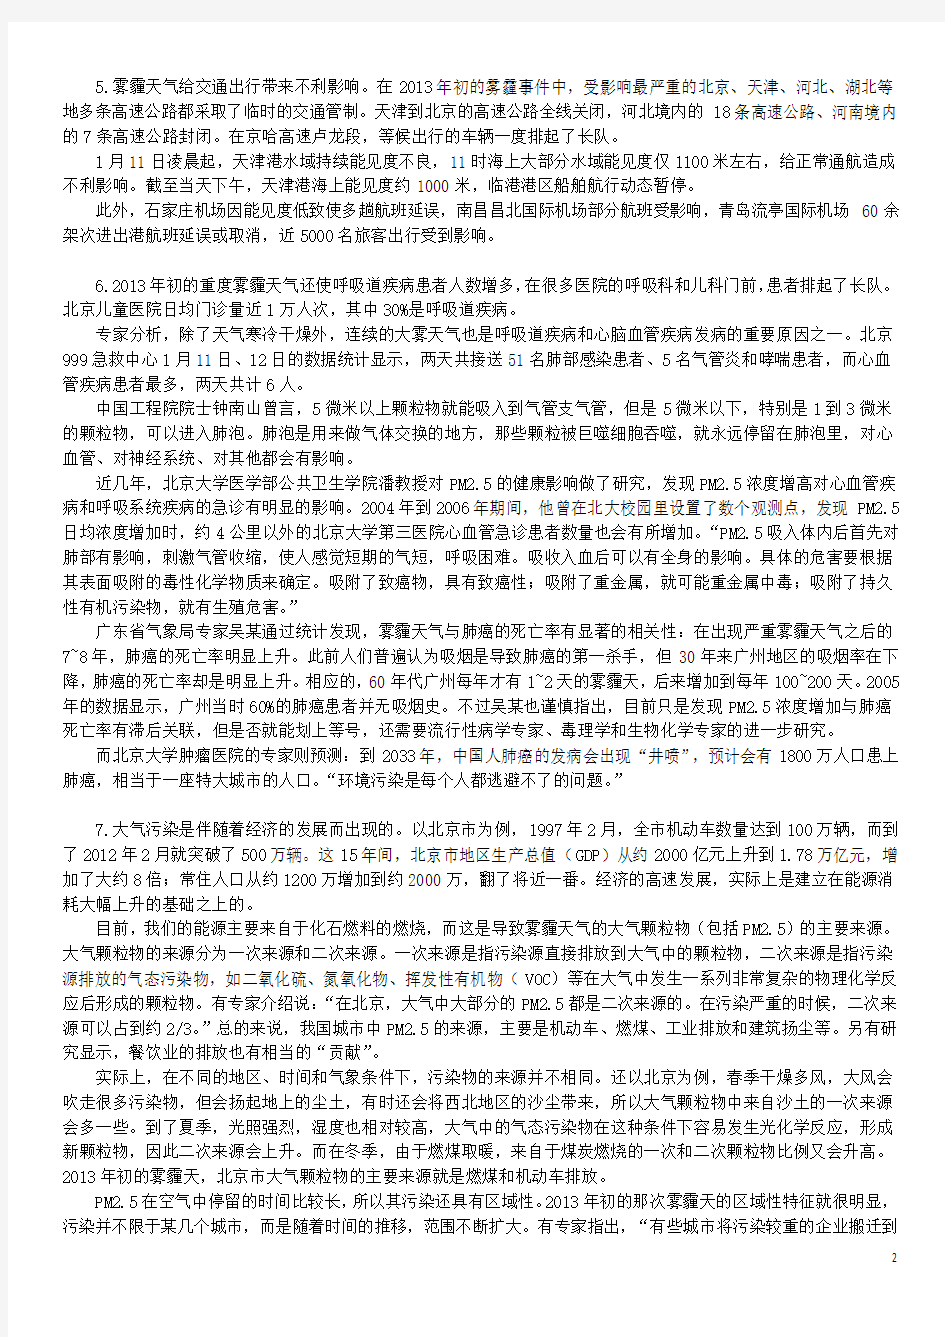 2016年上海市招录警察学员考试《申论》真题及答案